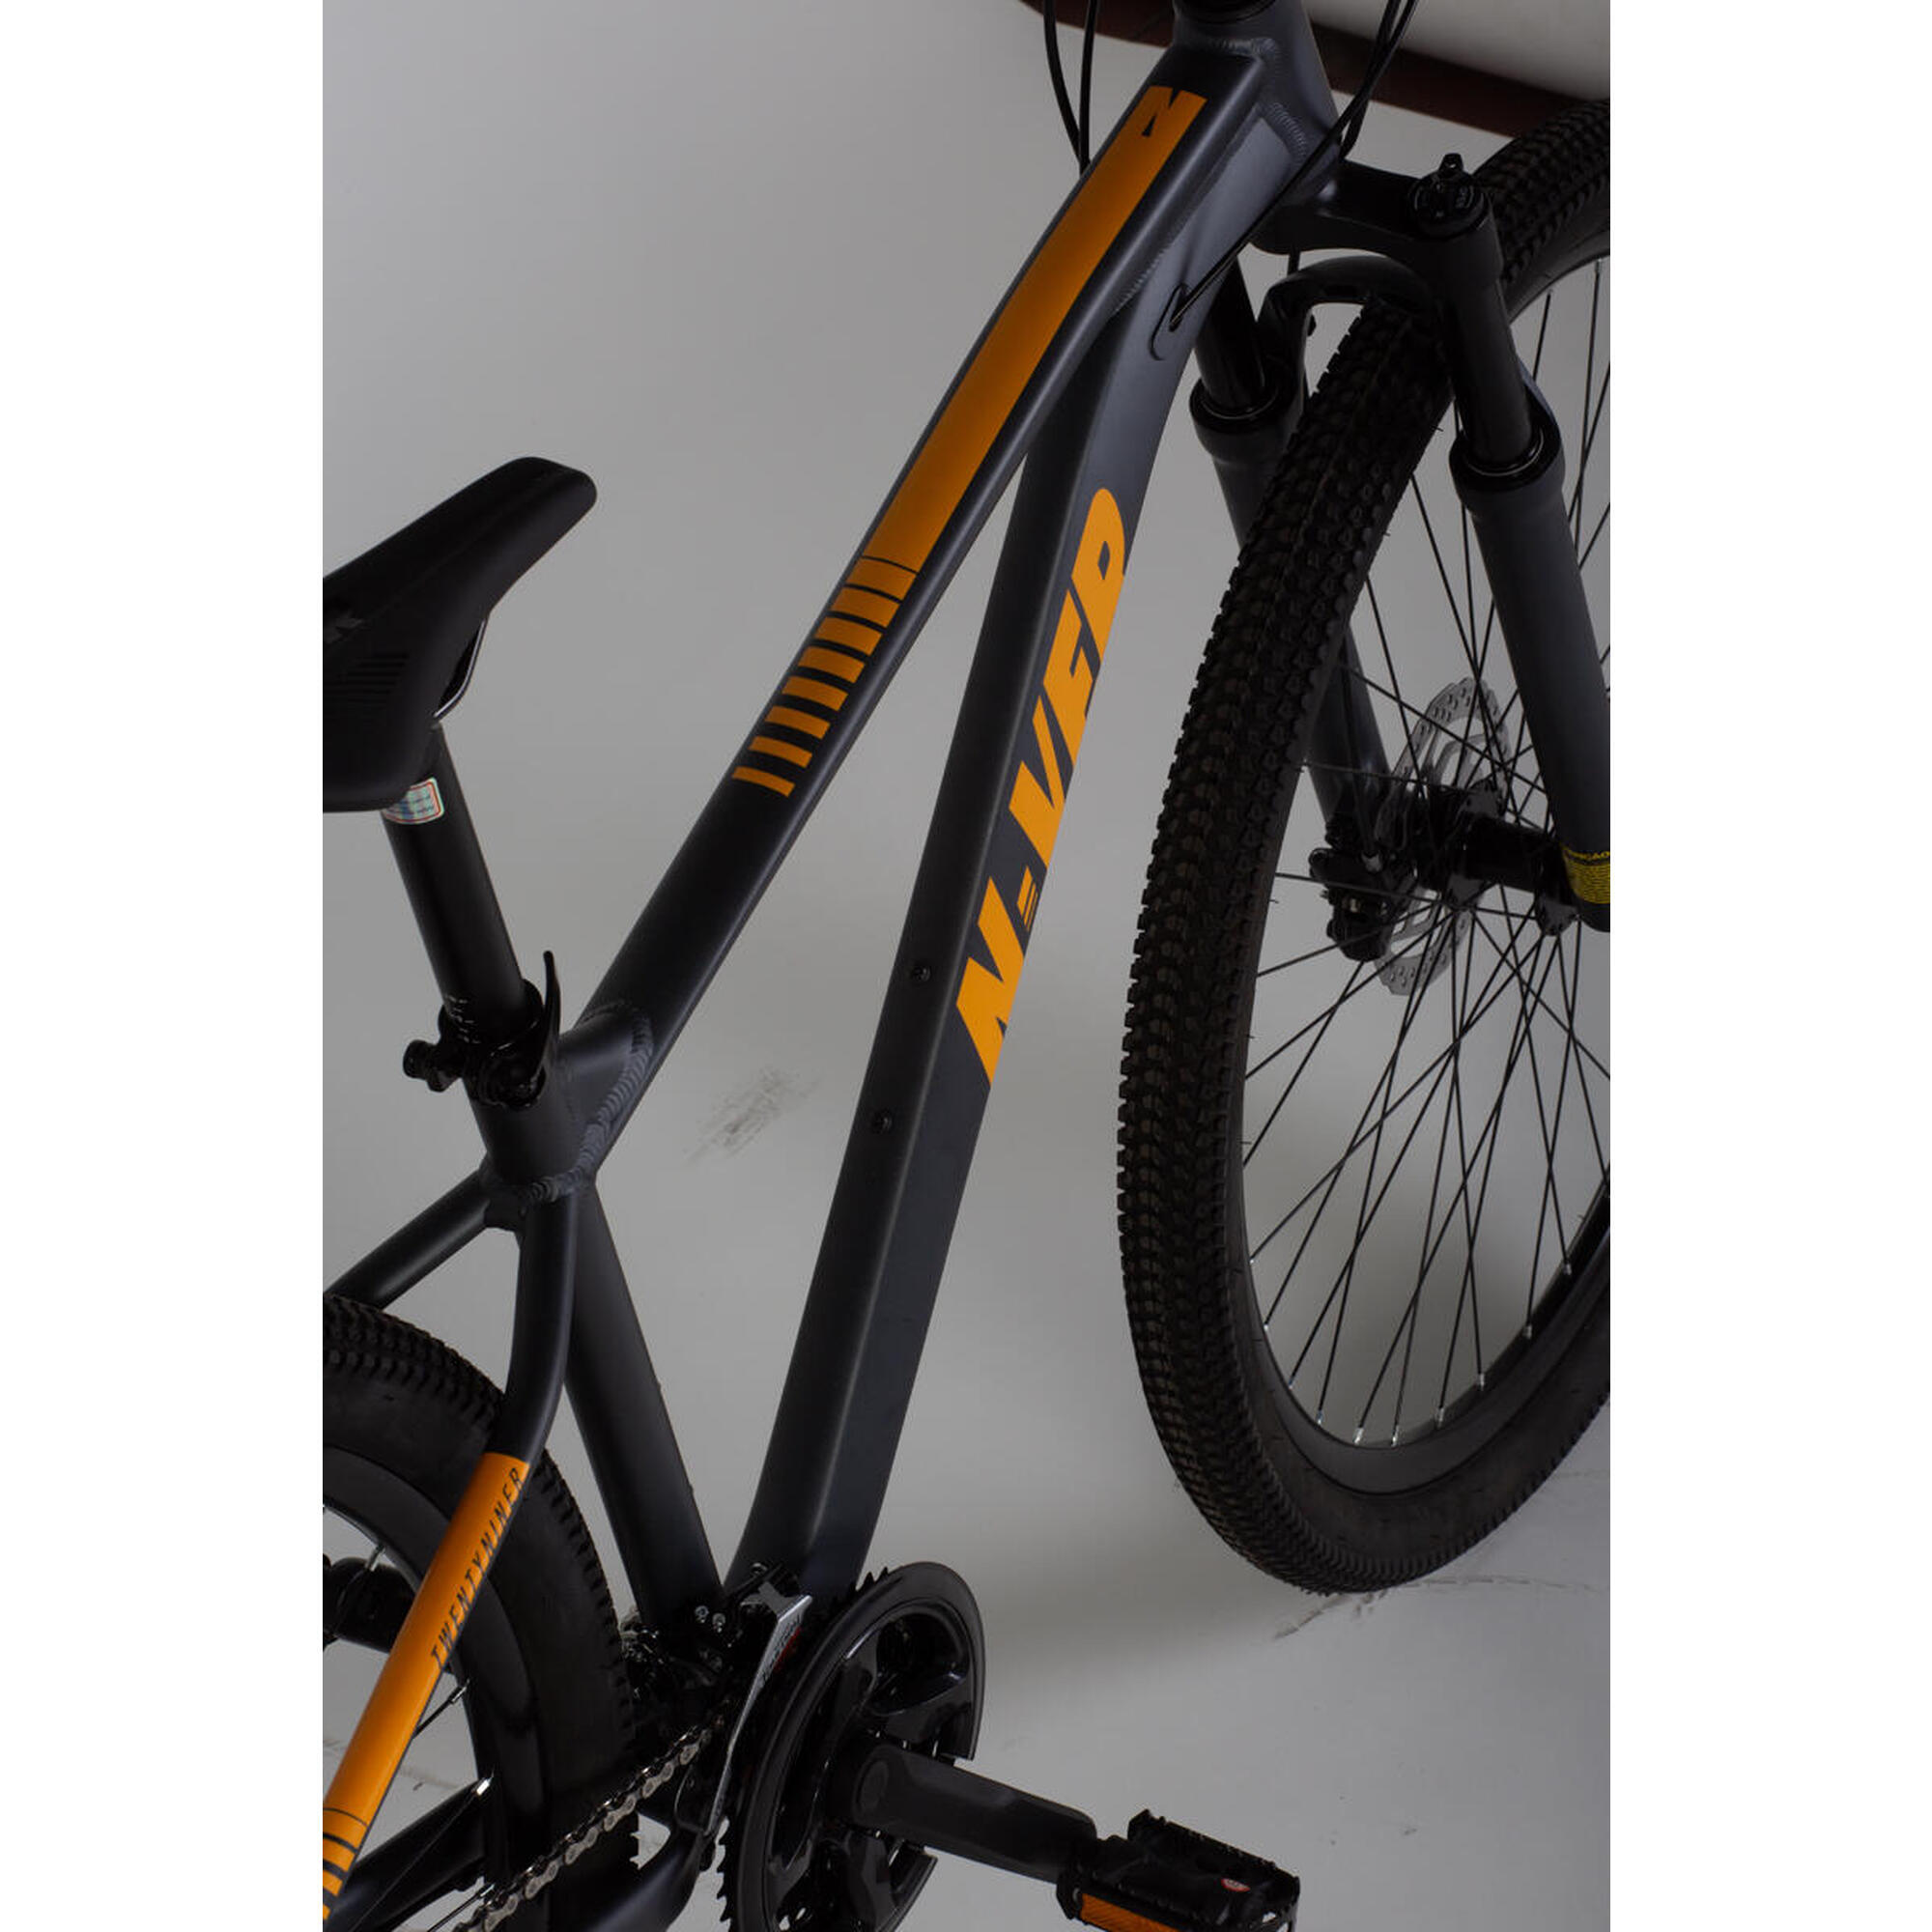 Bicicleta Nv 908 con ruedas de 29″, 24 velocidades, freno de disco hidráulico